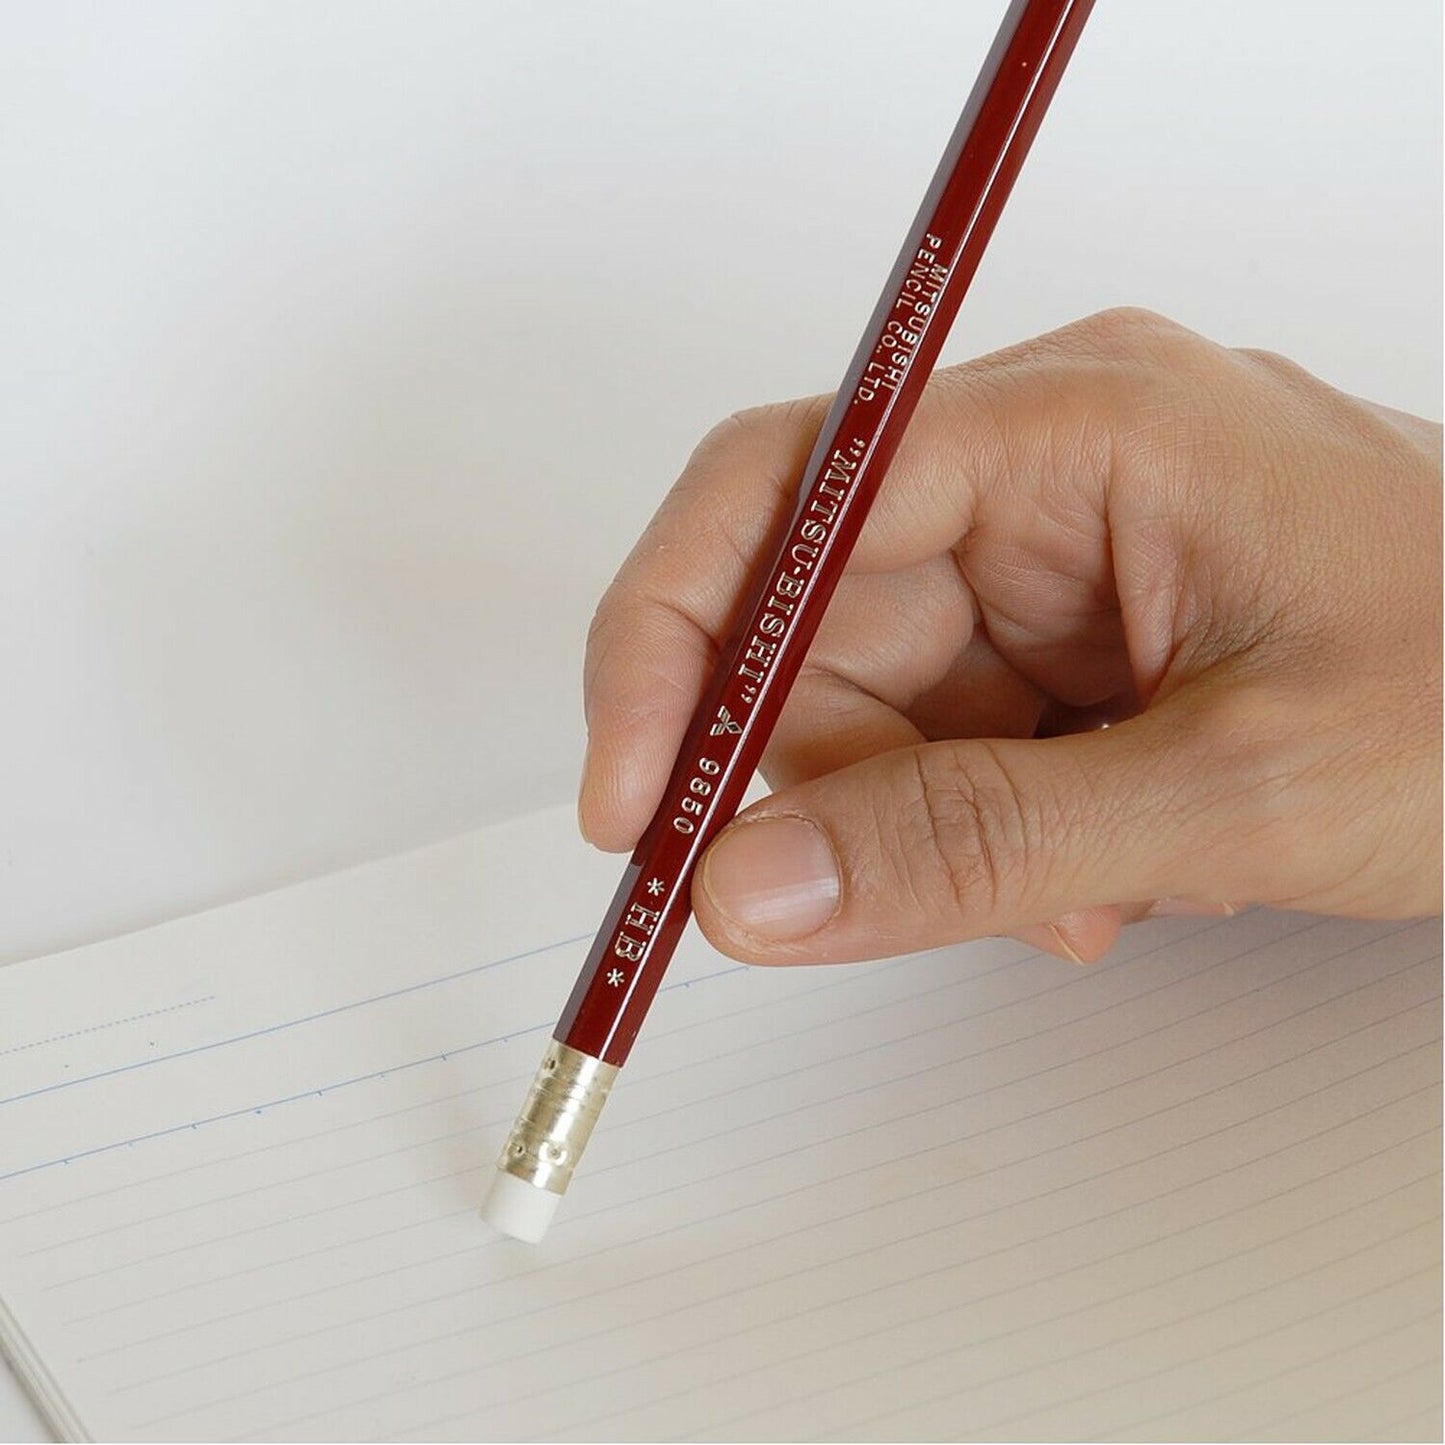 Mitsubishi 9850 Pencil w/ Eraser - HB / Set of 12